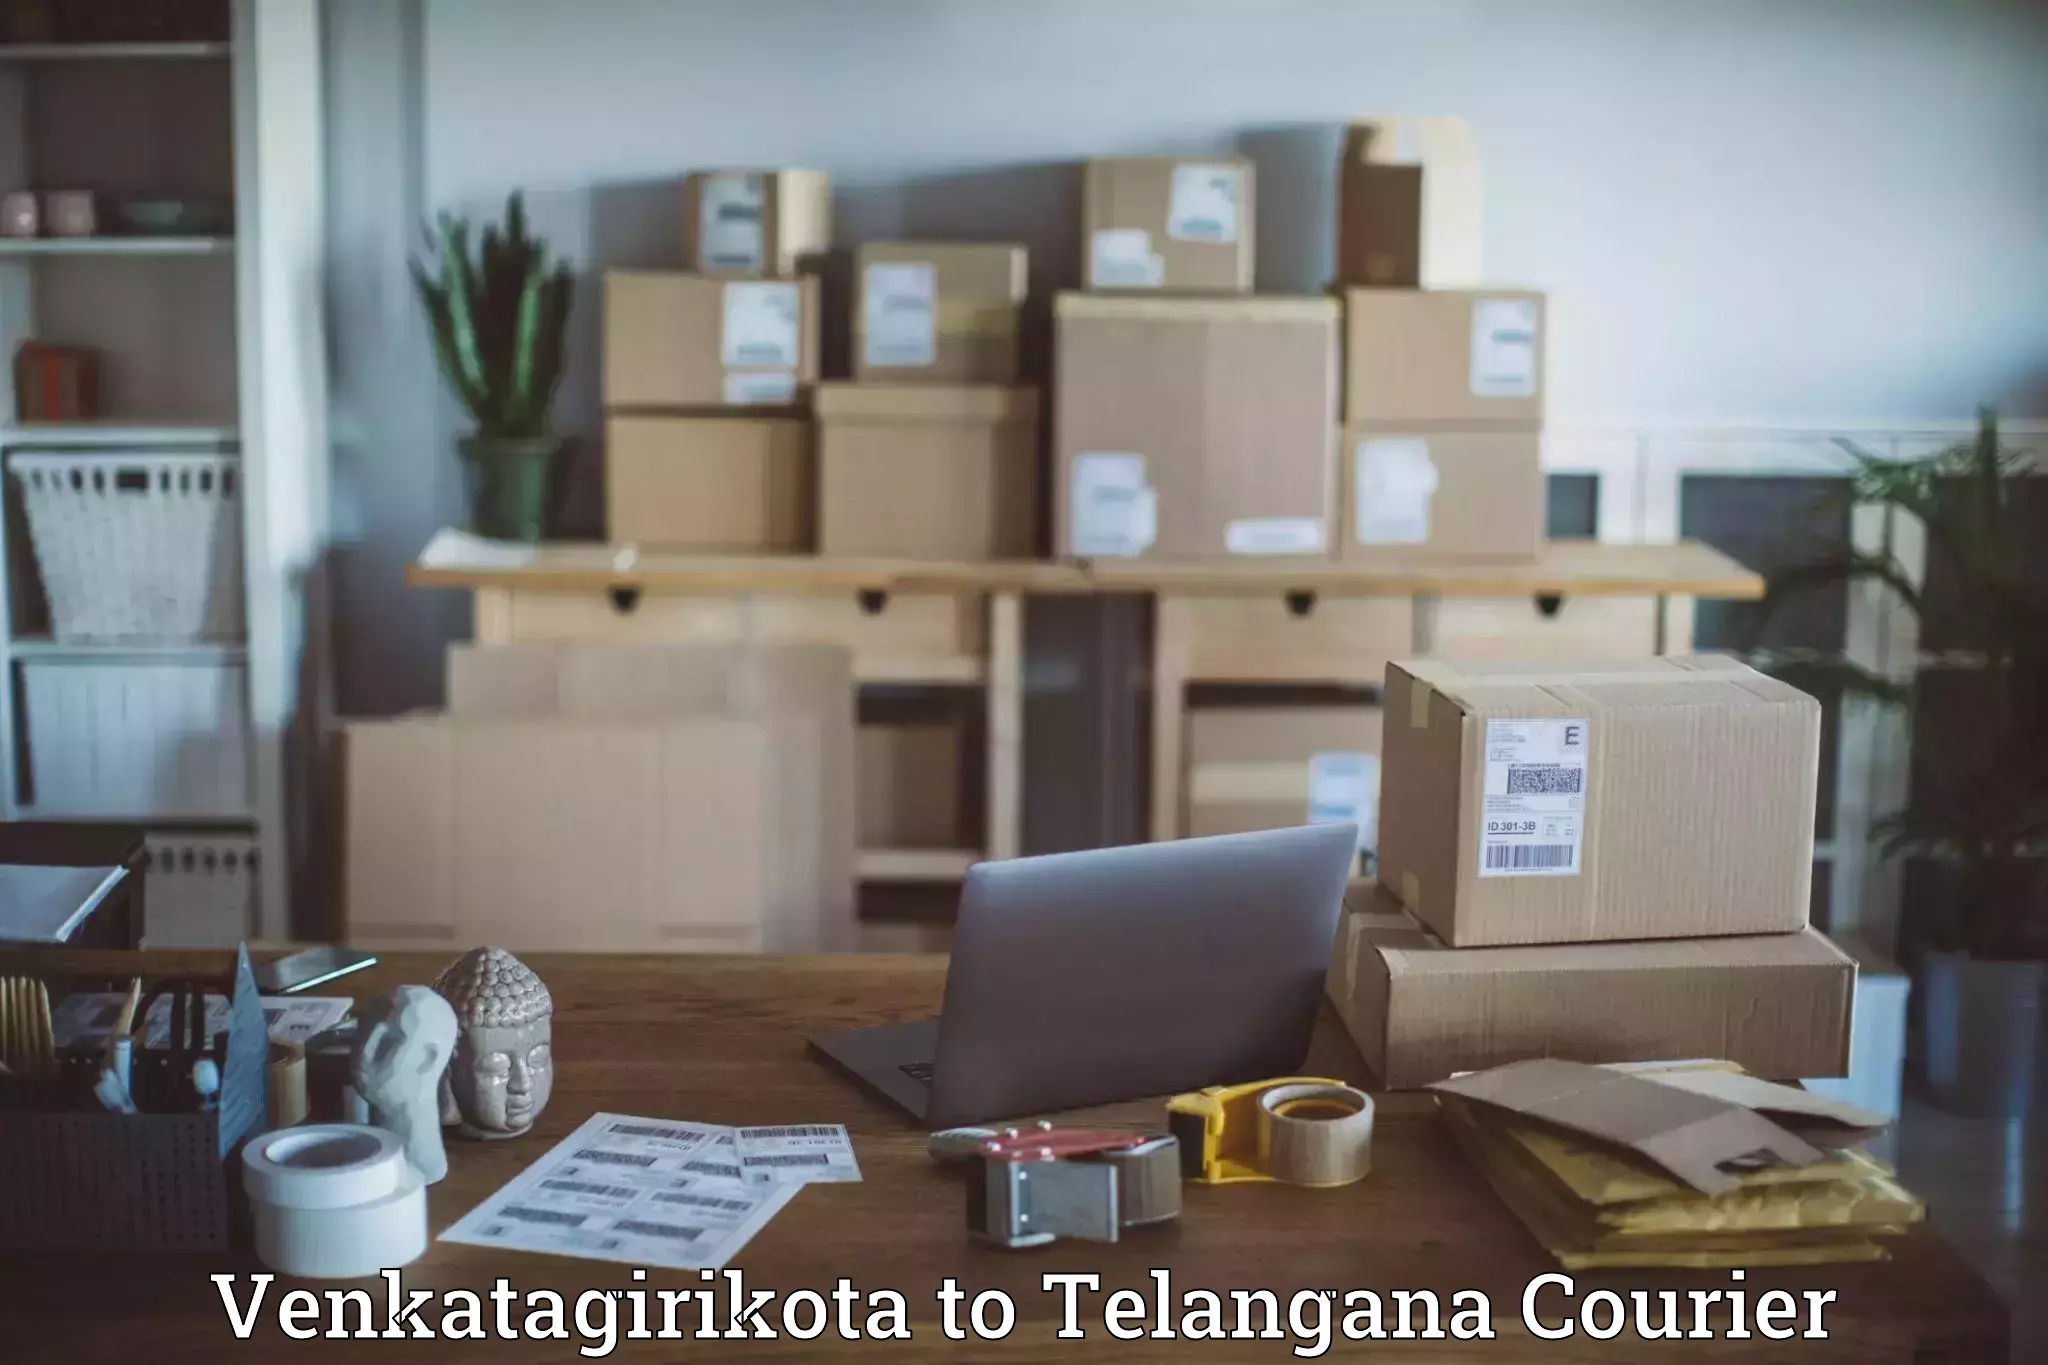 Premium courier services Venkatagirikota to Telangana